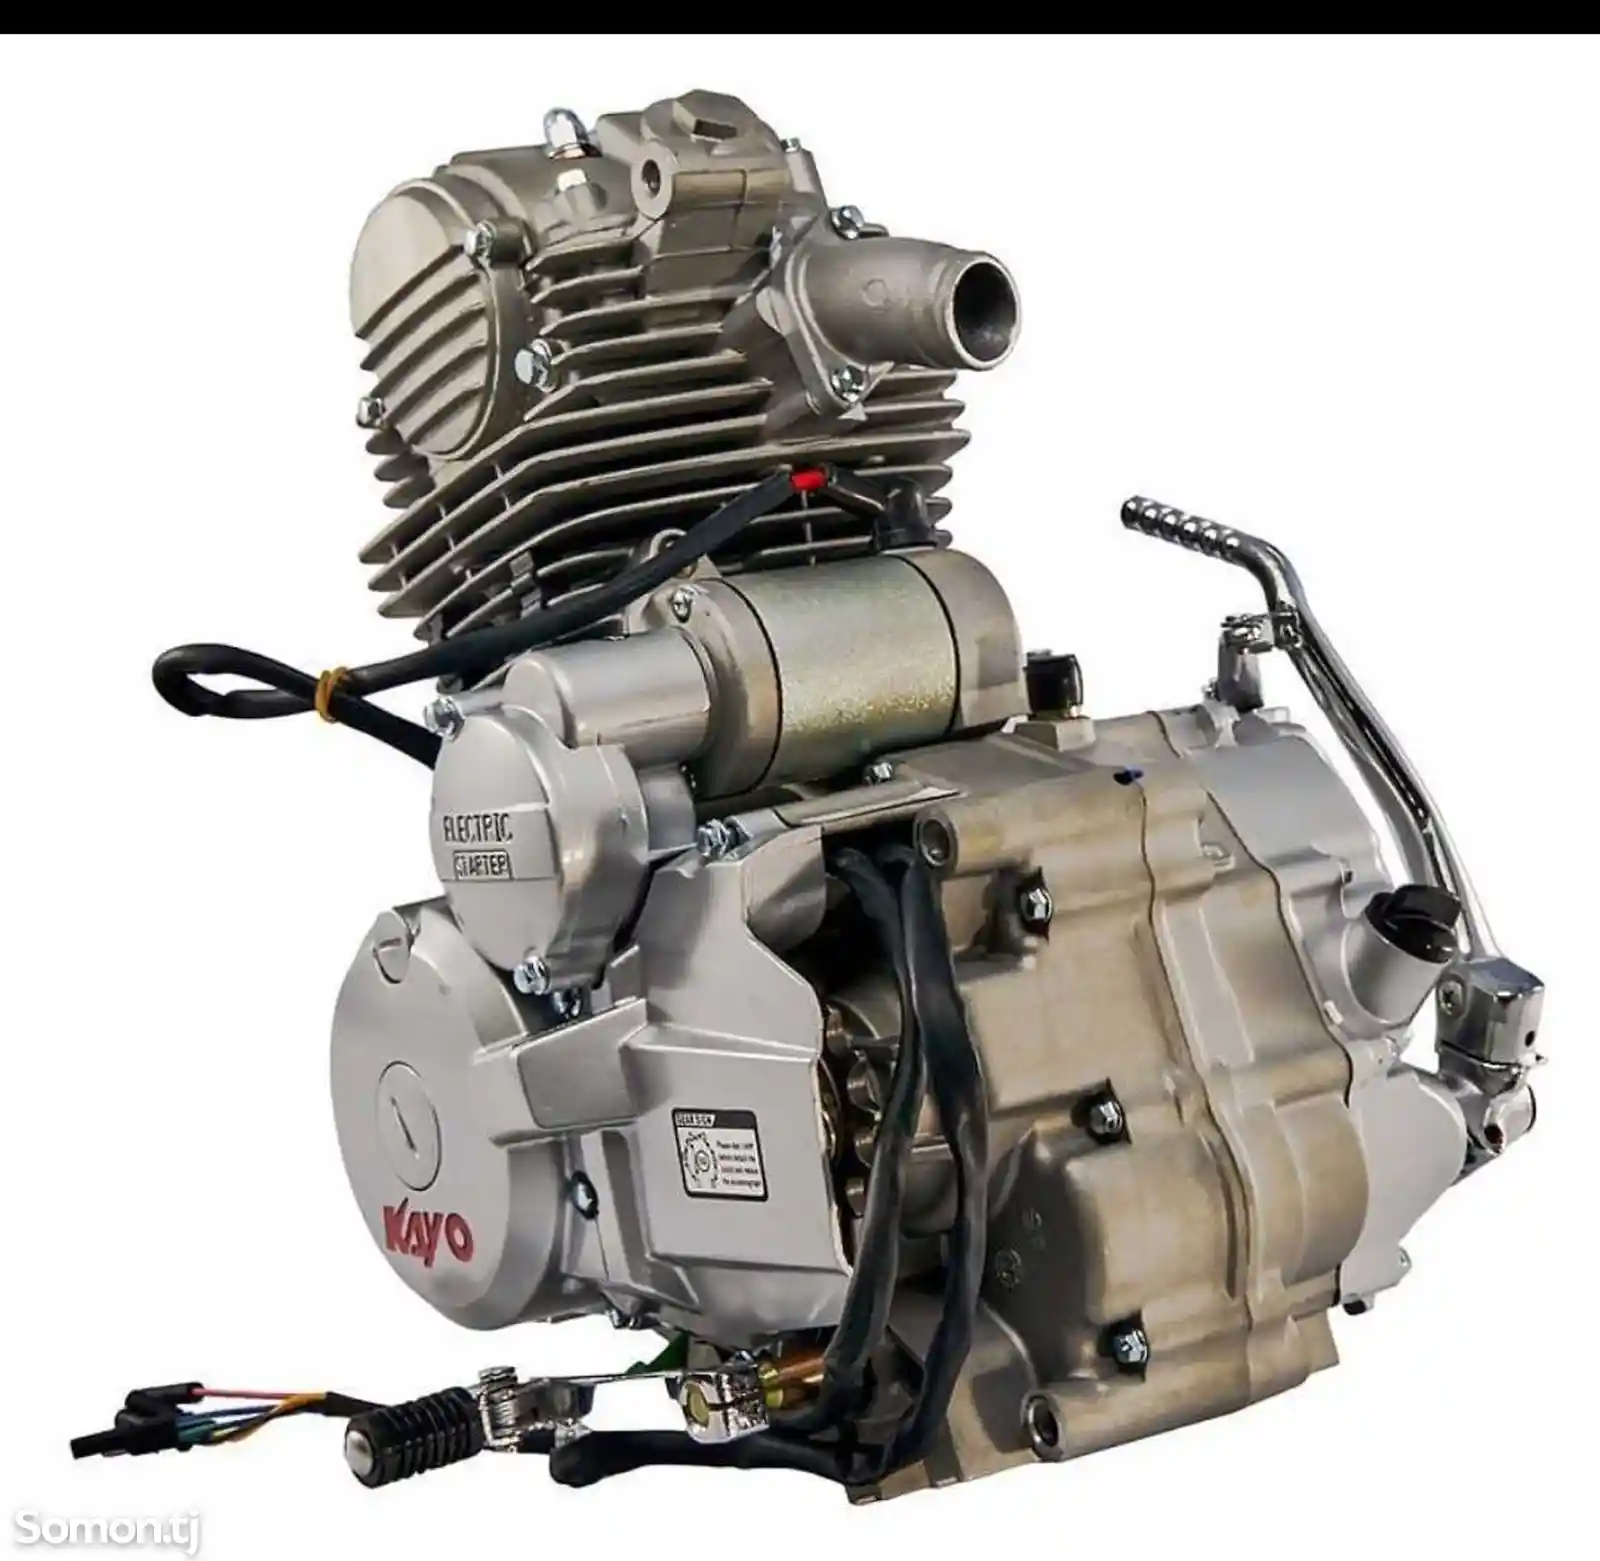 Двигатель Kayo 250 куб-2